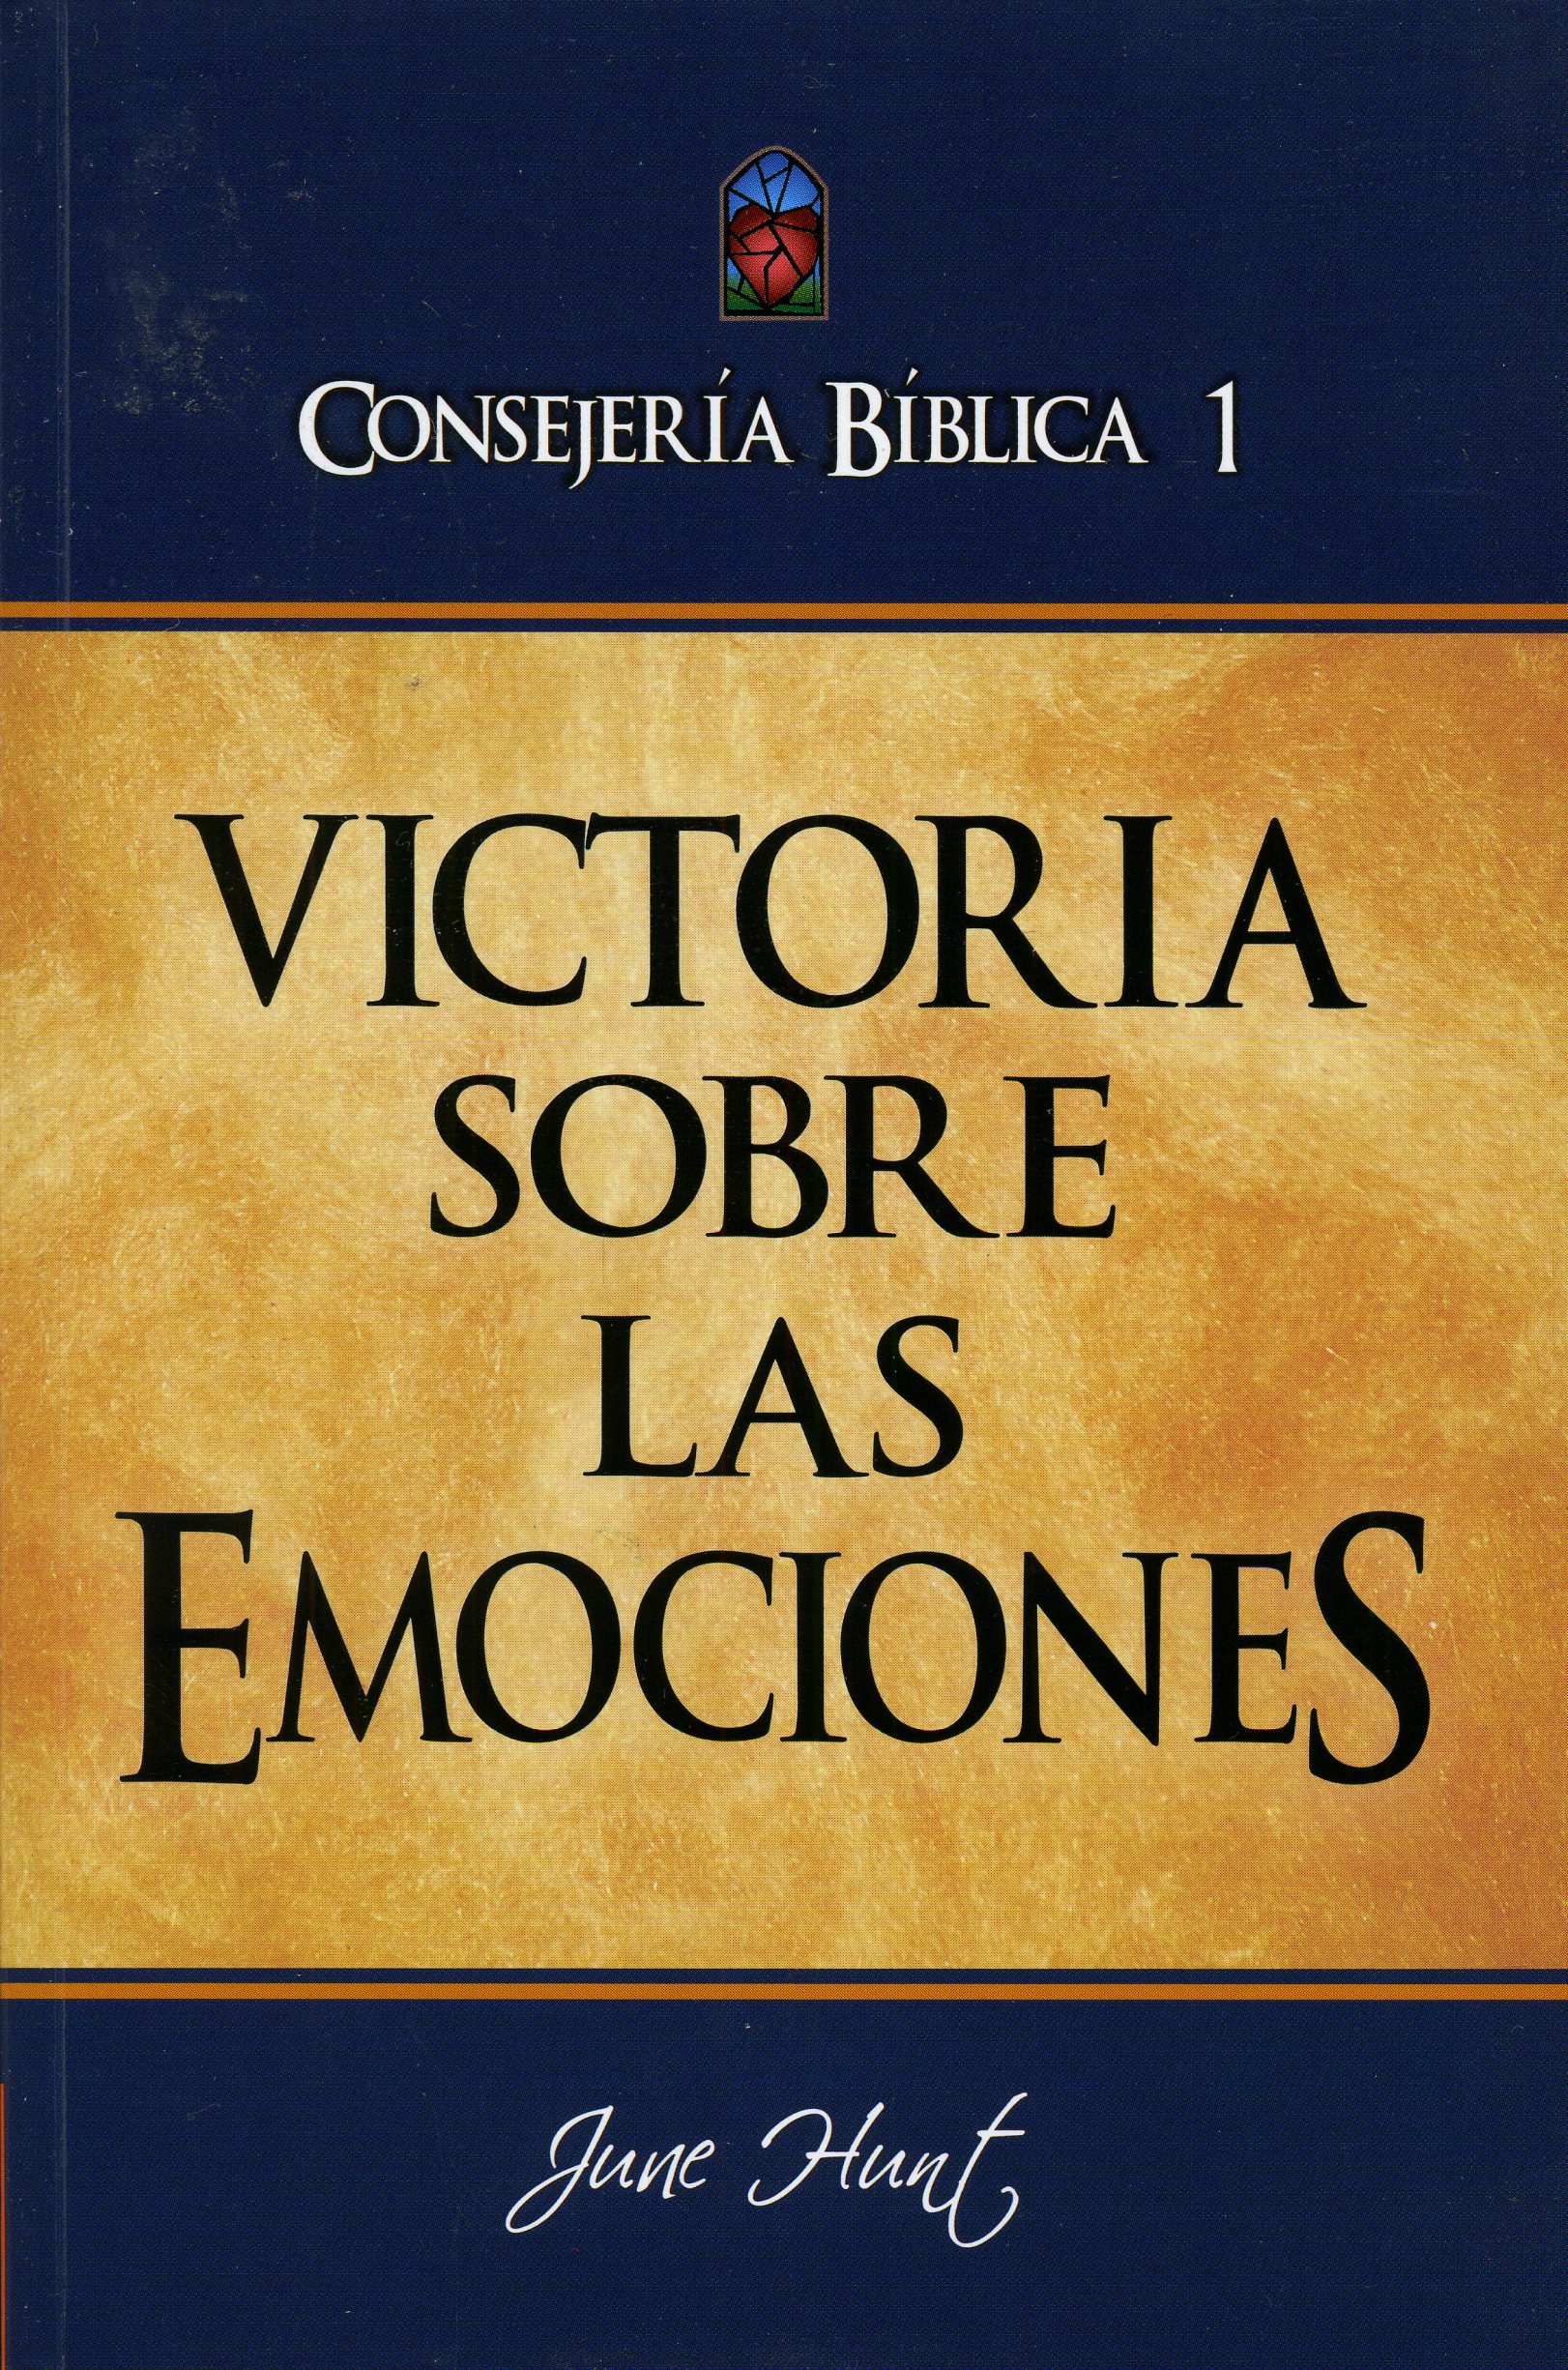 Consejería Bíblica 1 – Victoria sobre las emociones